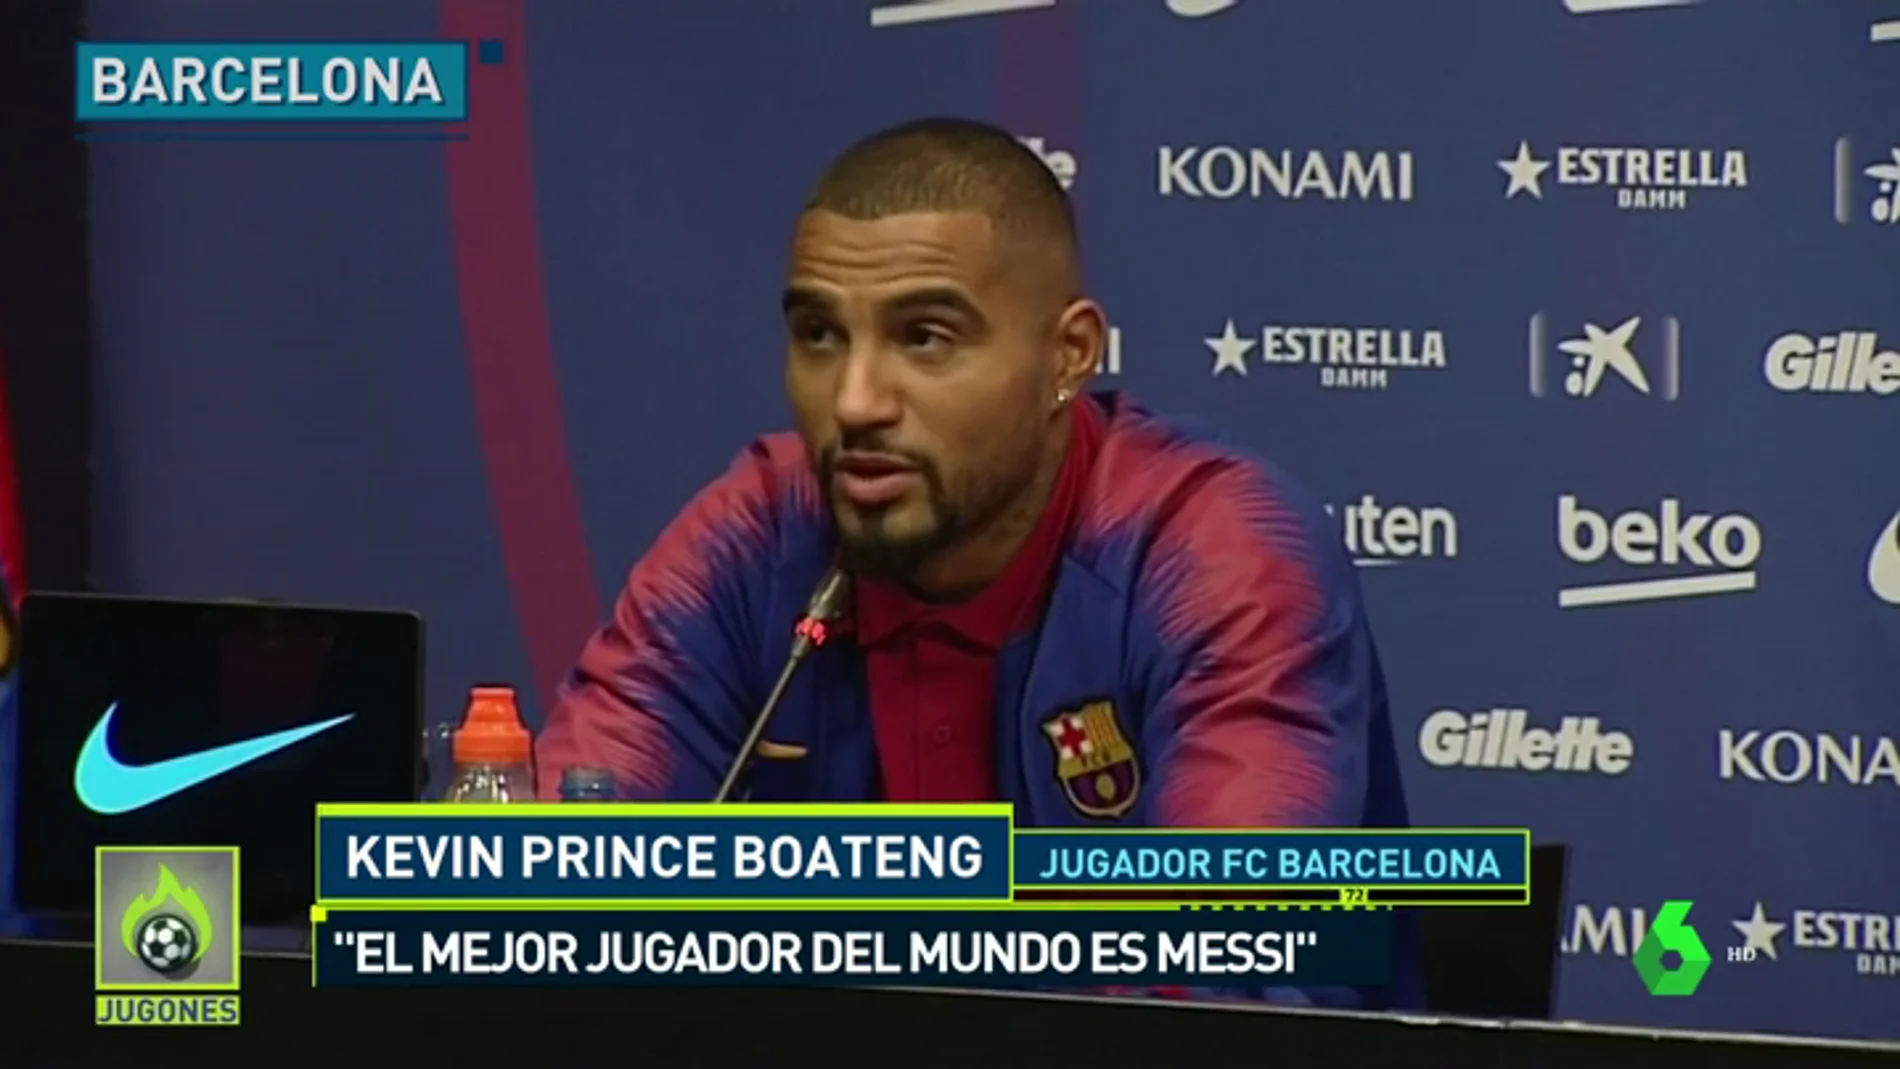 Kevin-Prince Boateng, presentado como nuevo jugador del Barcelona: "Sé que no es mi rol venir a jugar de titular"